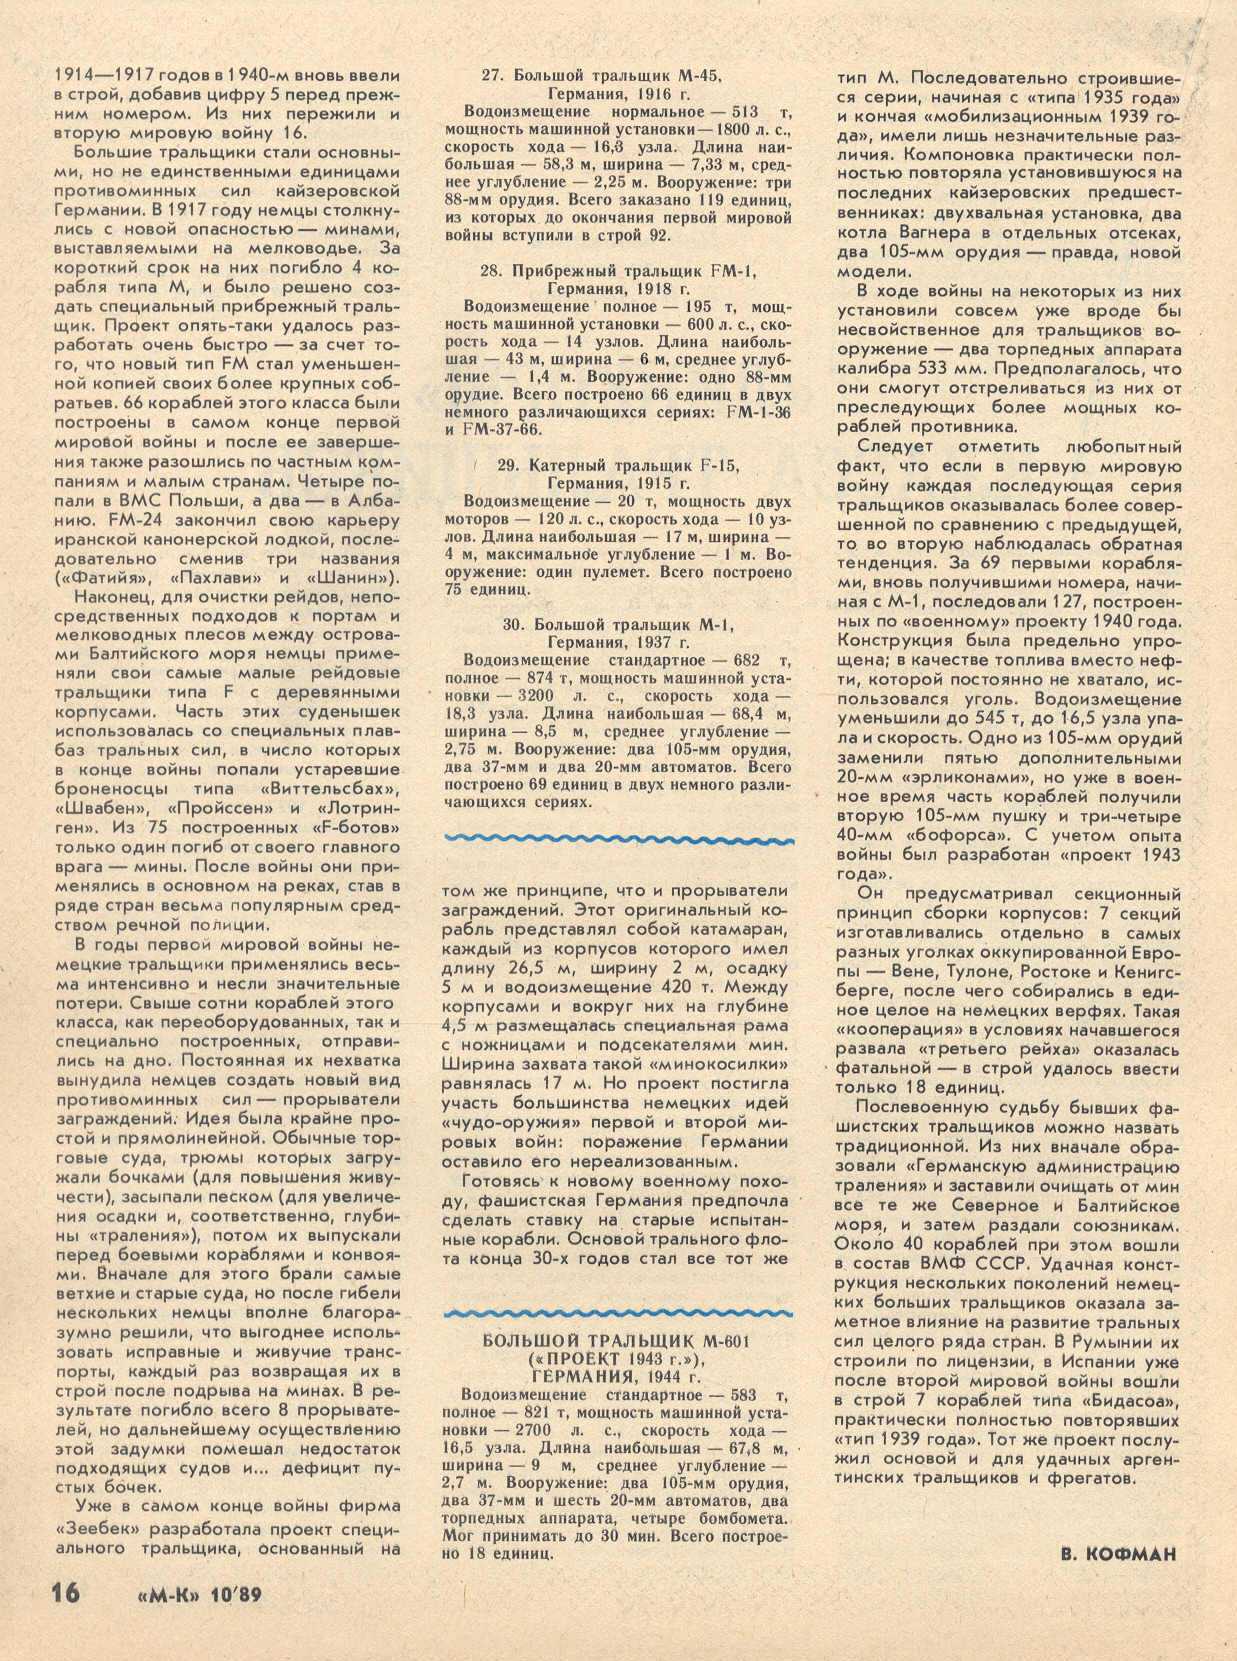 МК 10, 1989, 16 c.